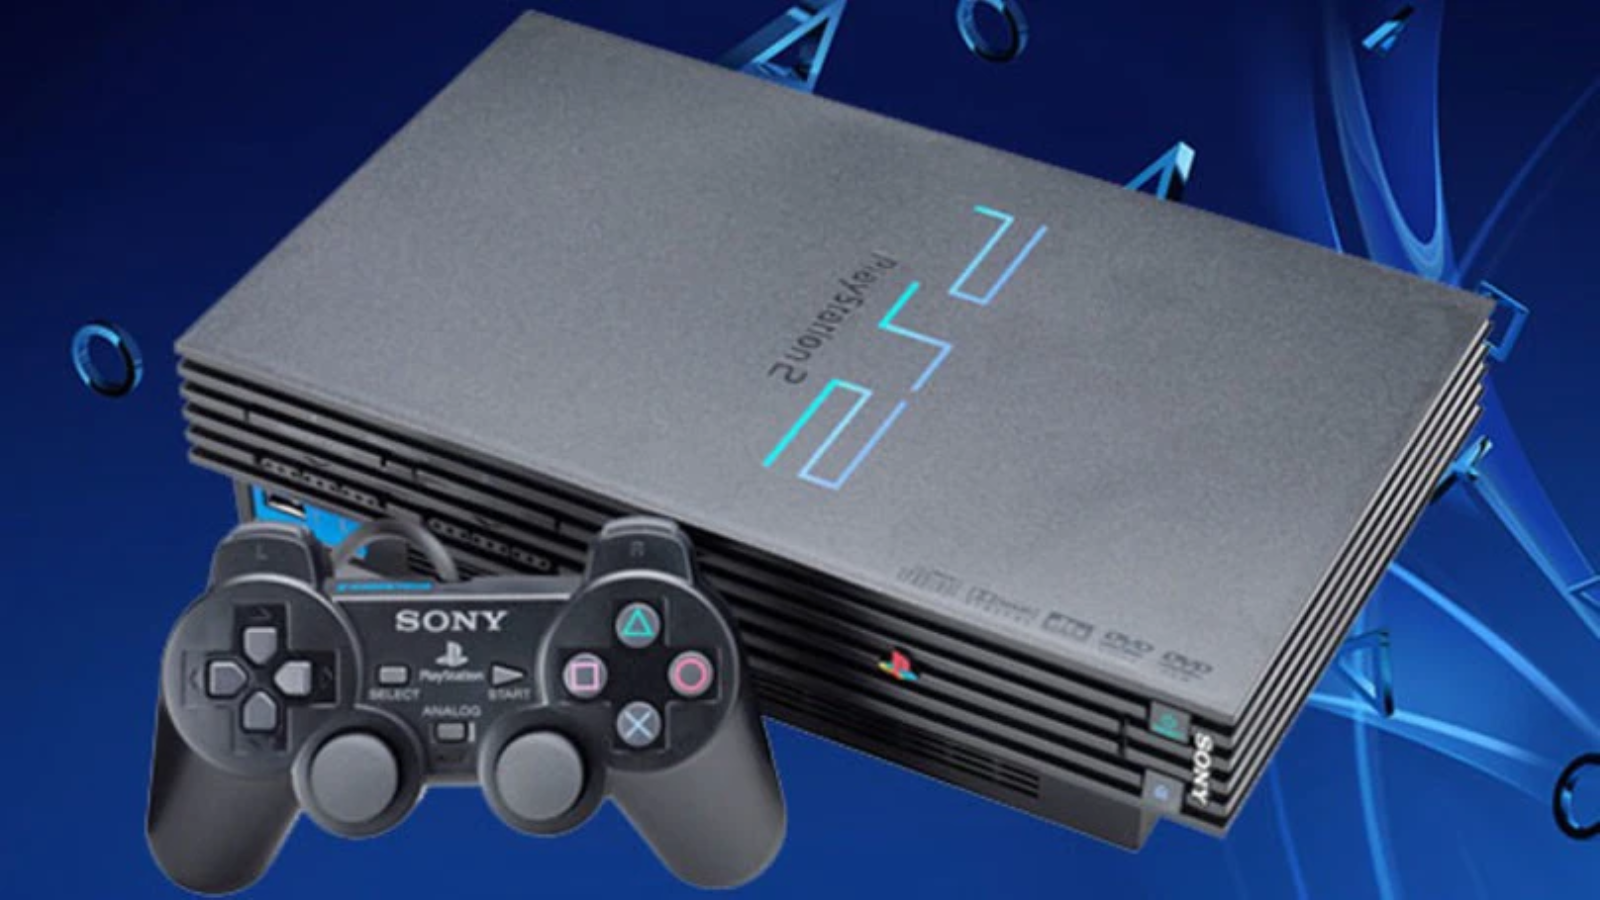 PS2 đã bán được 160 triệu máy theo CEO của Sony PlayStation